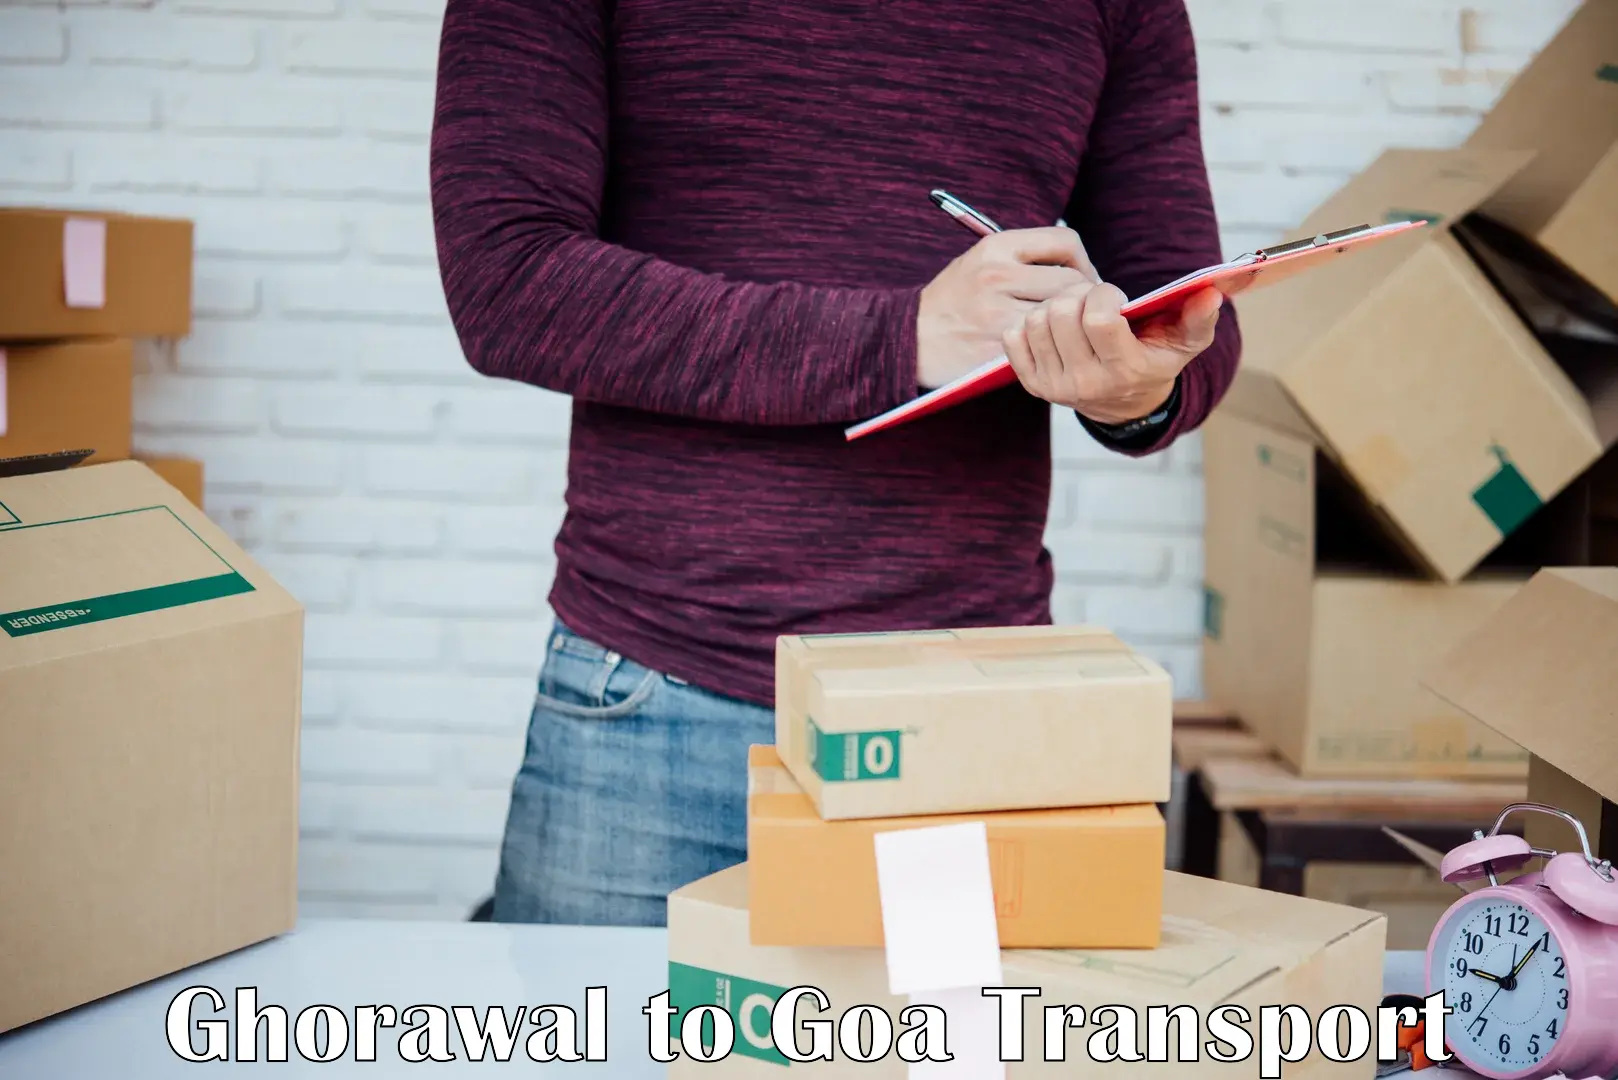 Shipping partner Ghorawal to Margao